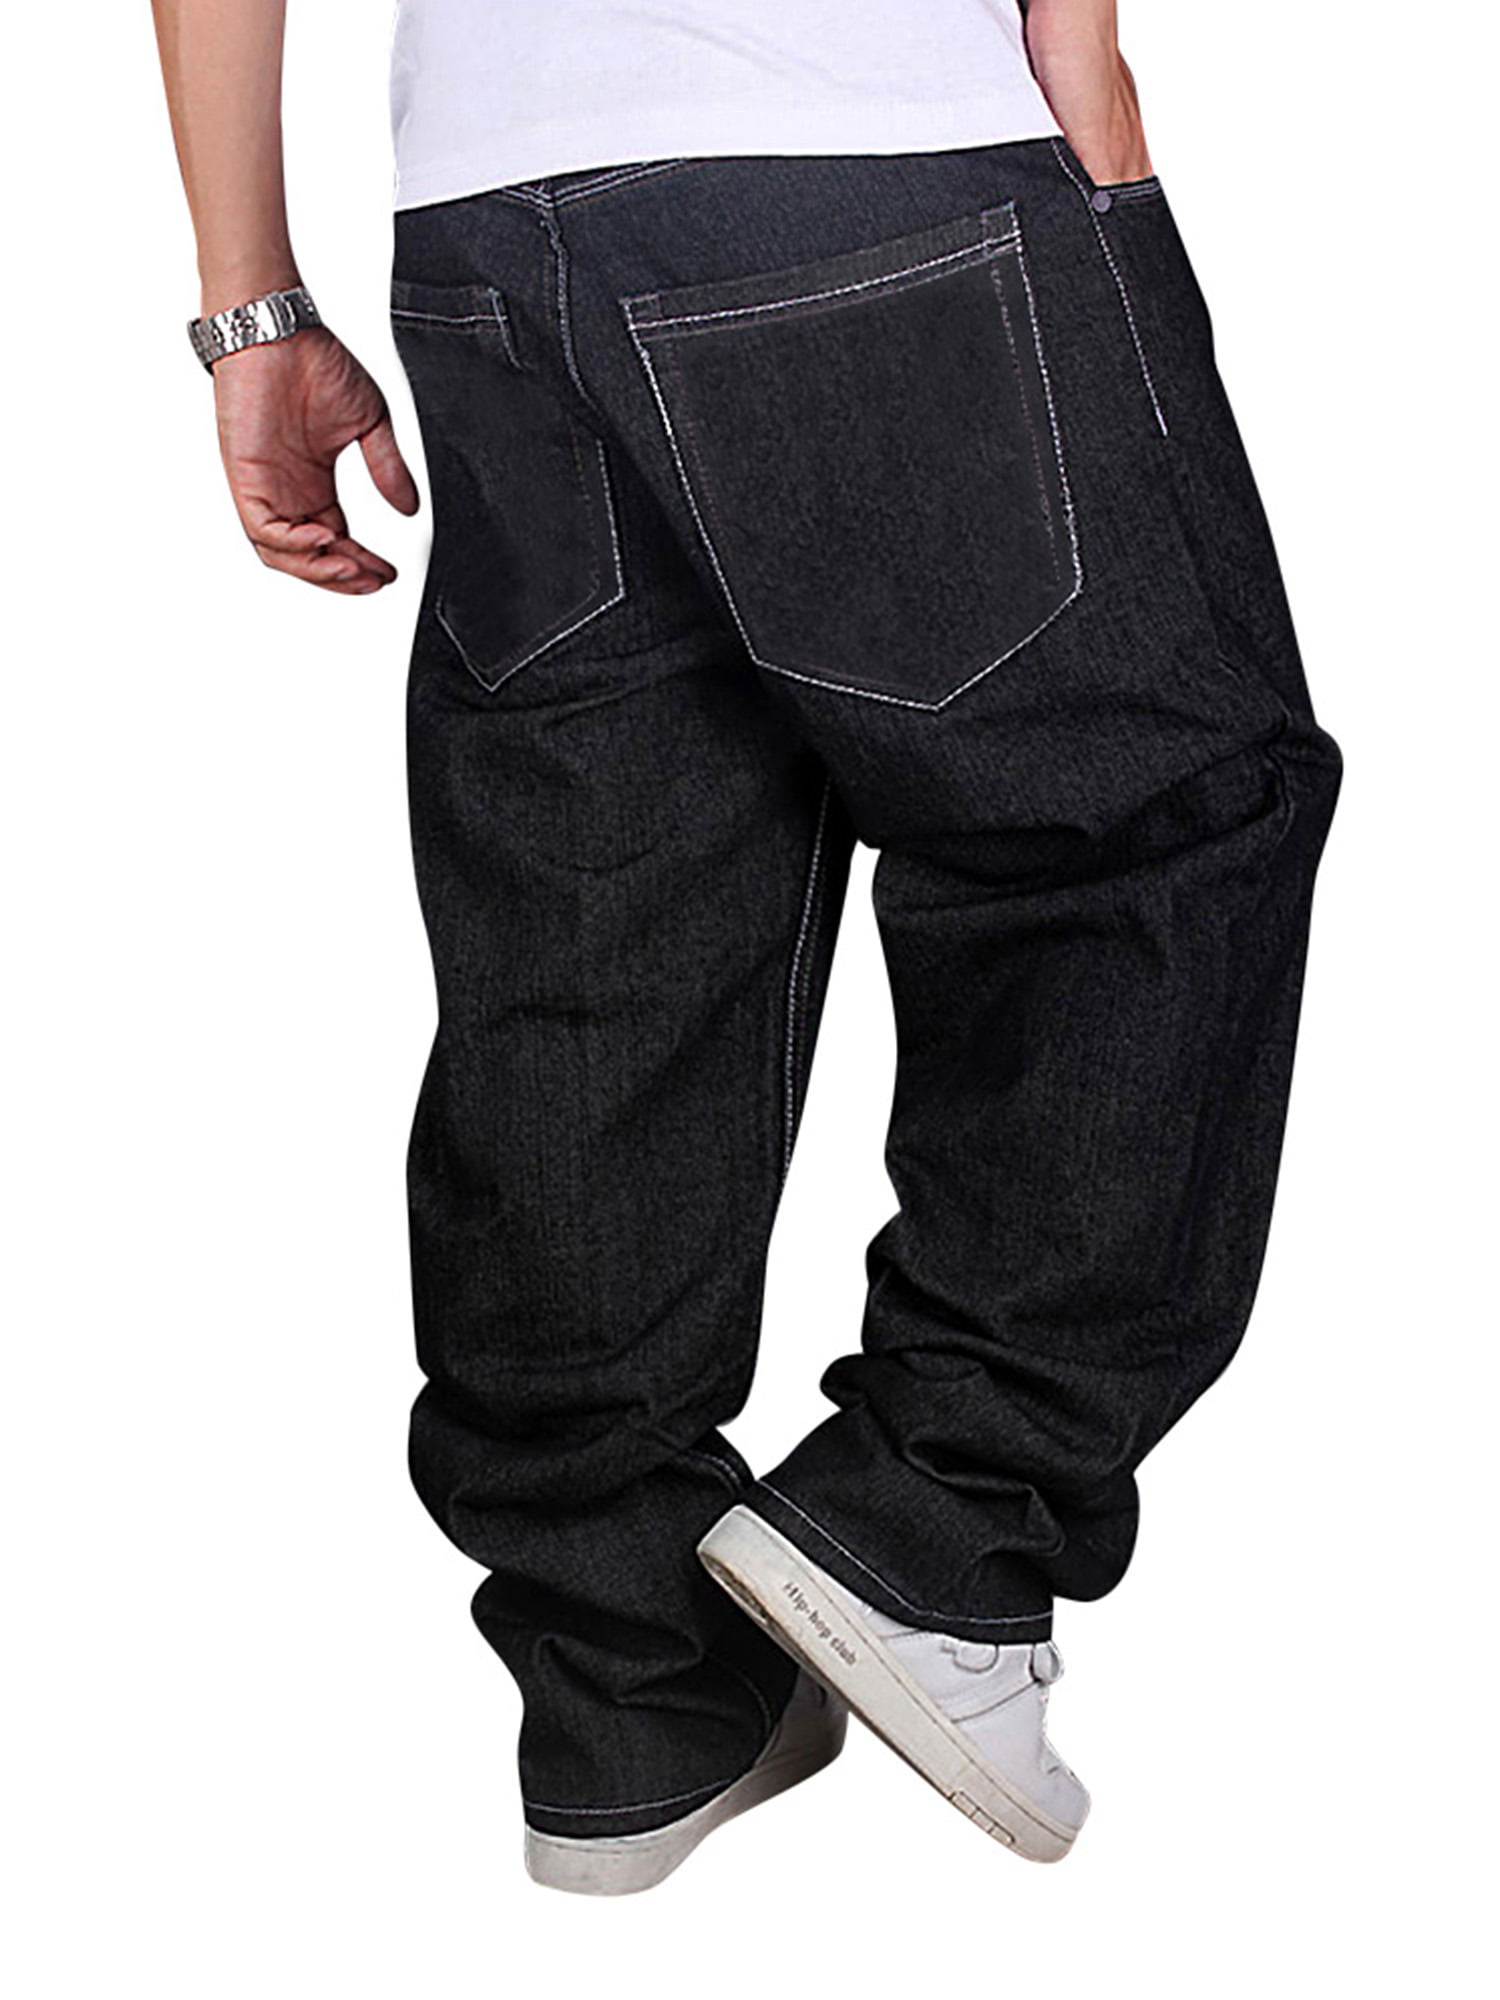 hip hop baggy jeans